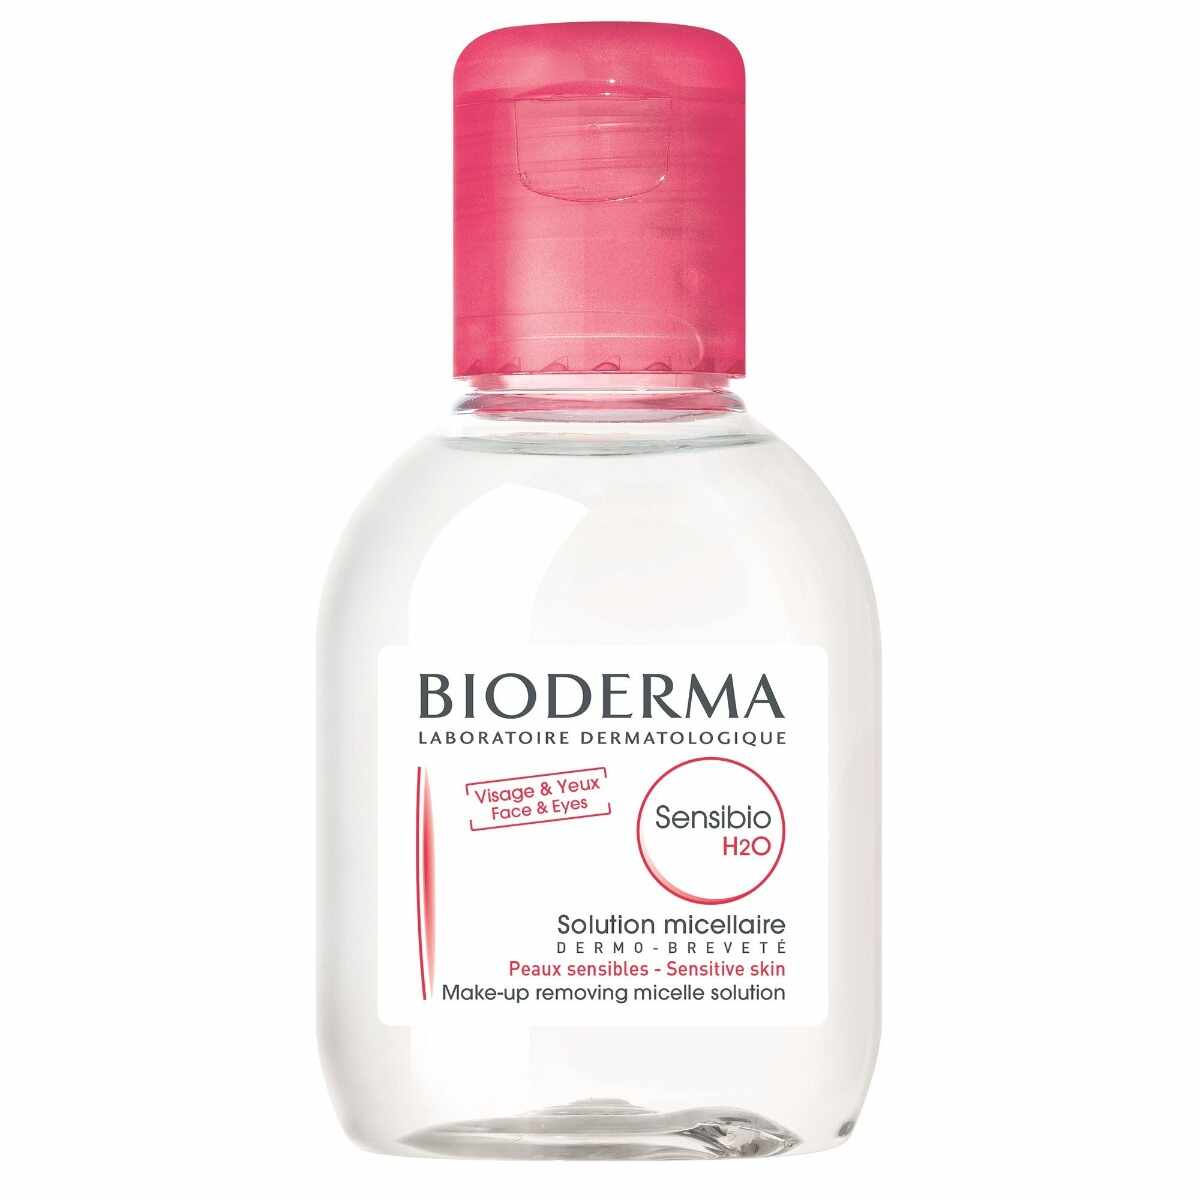 Lotiune micelara Sensibio H2O, 100 ml, Bioderma